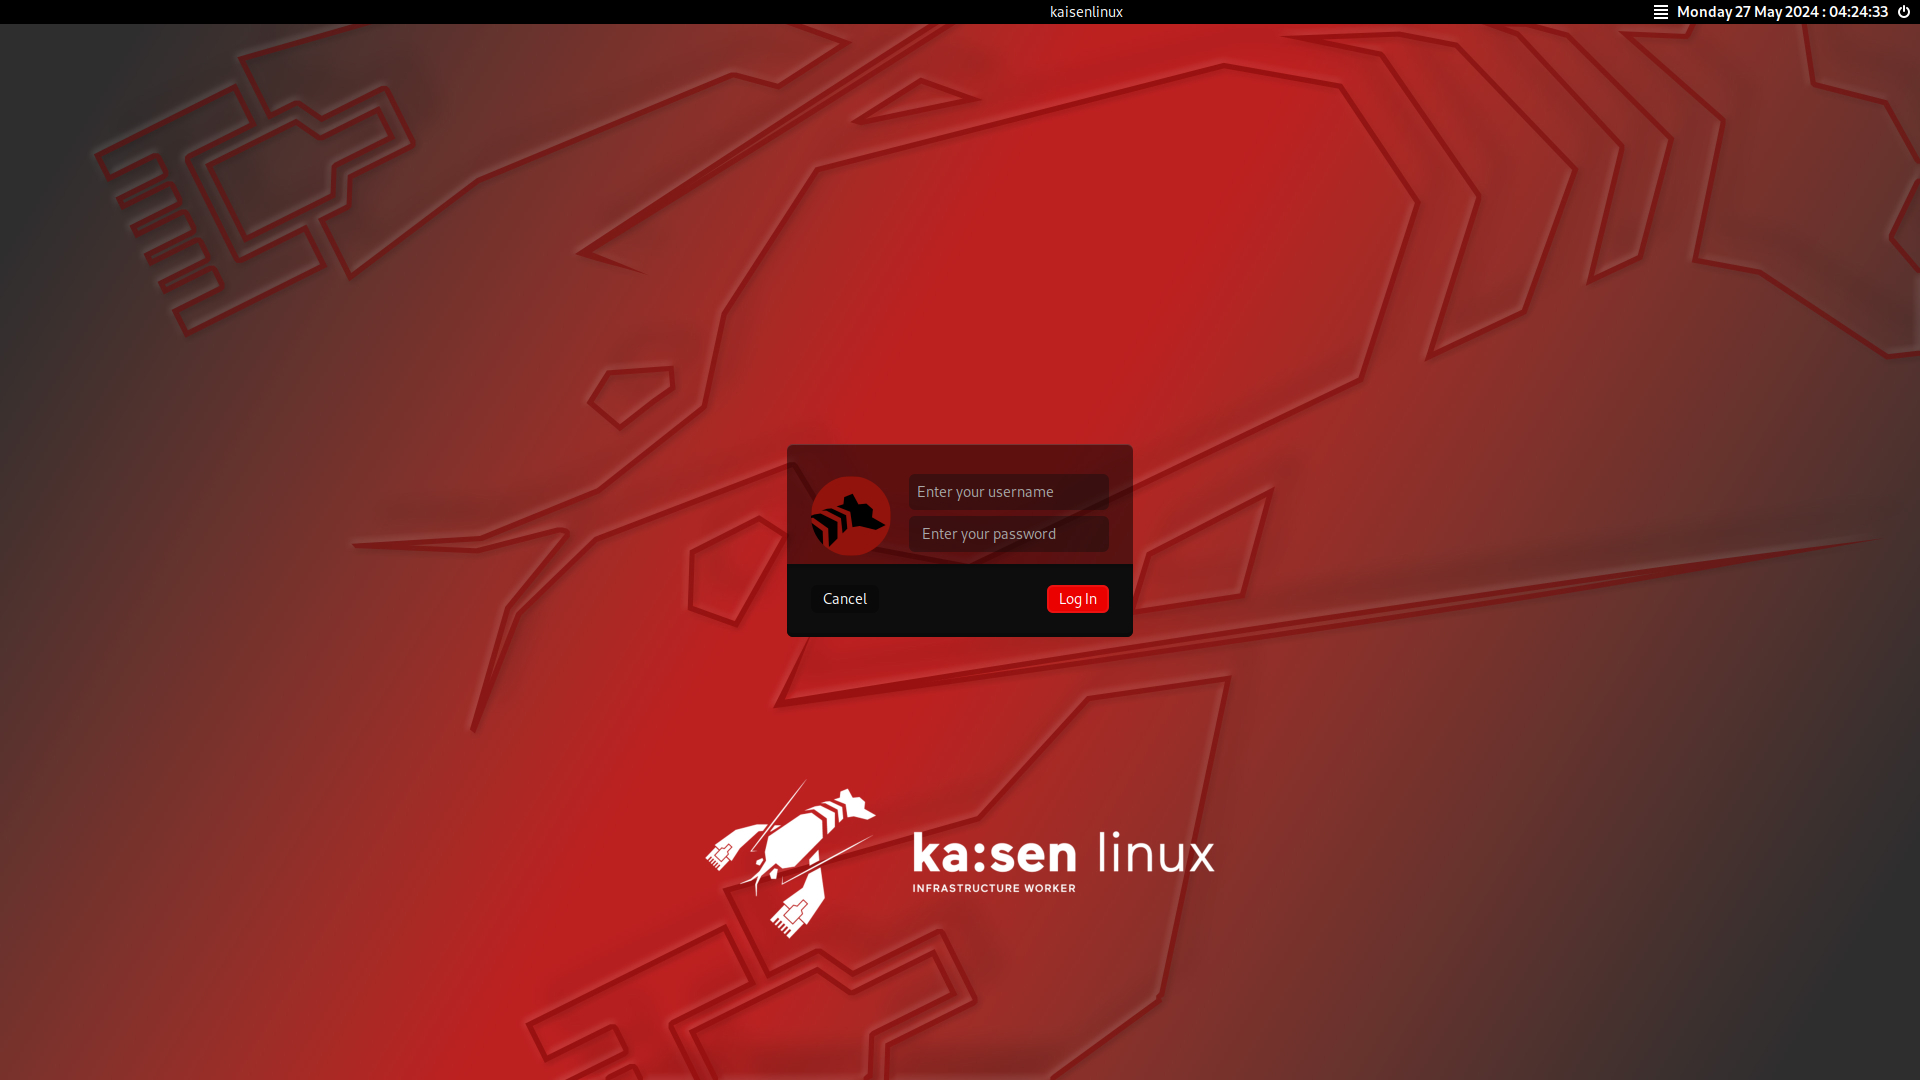 kaisen linux login screen